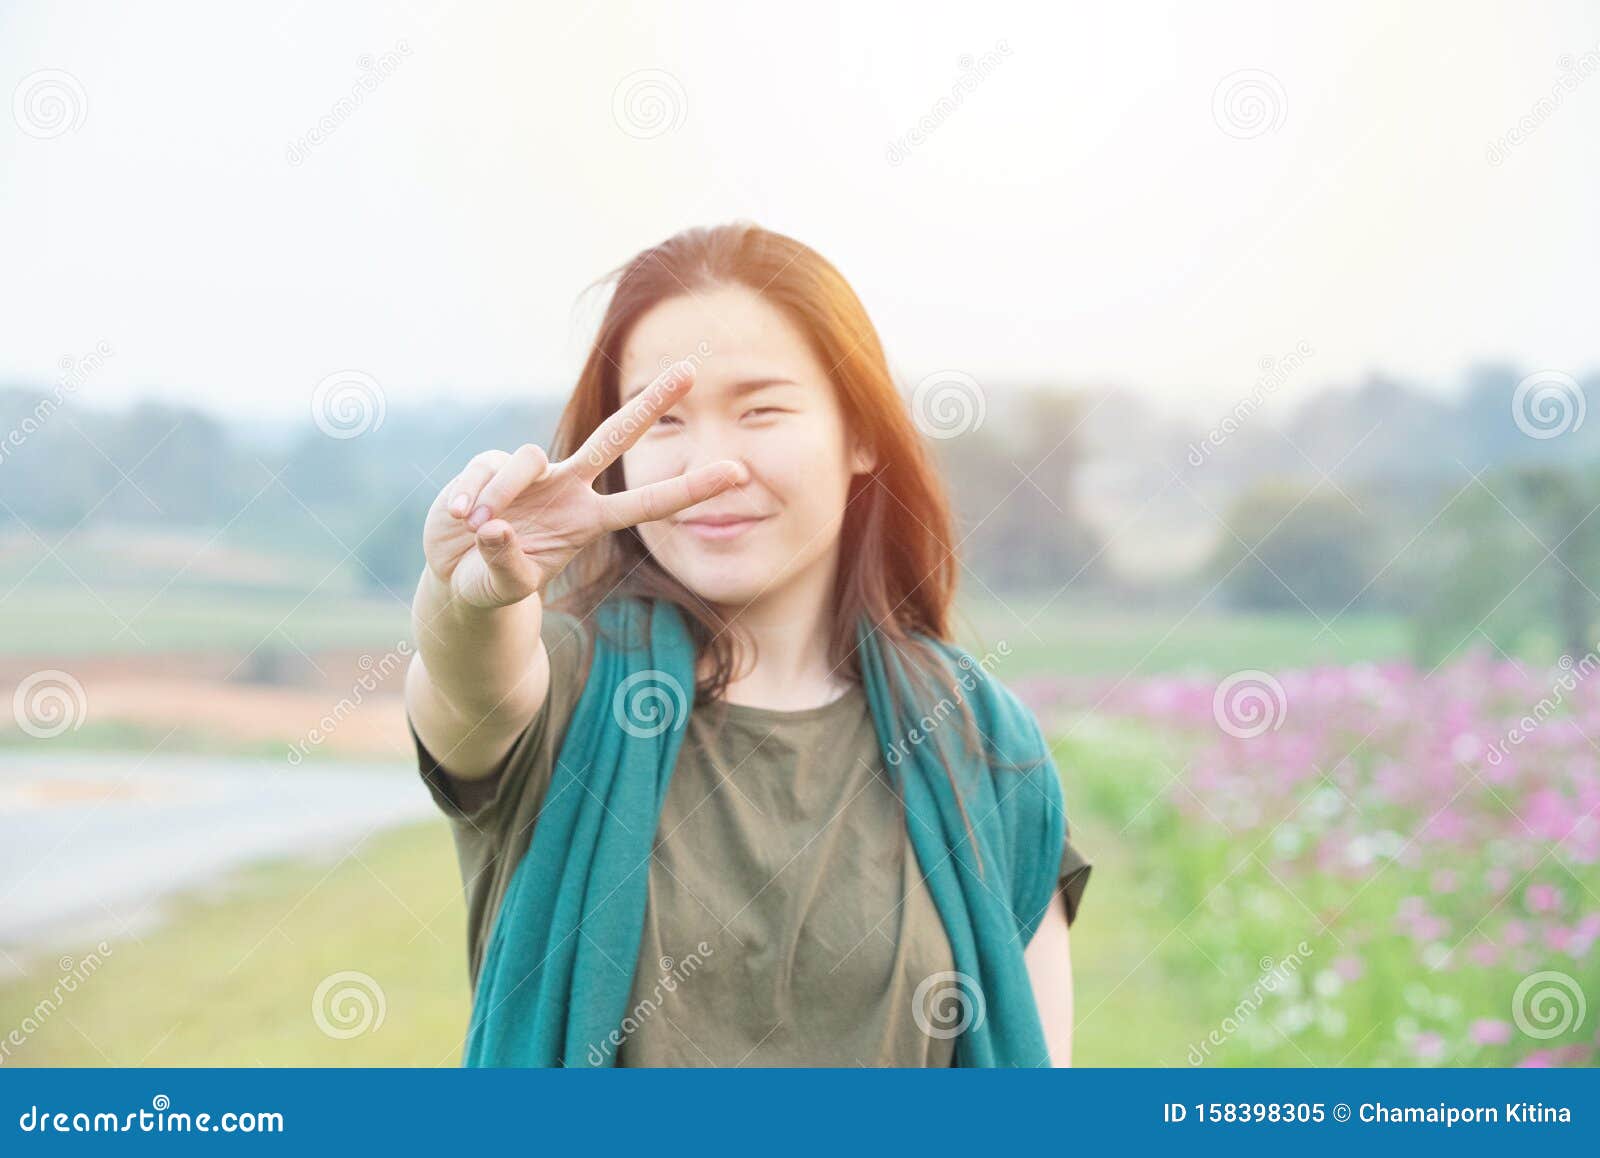 亚洲年轻女性微笑着看镜头 用宇宙田背景的手指展示和平标志的画像库存图片 图片包括有亚洲年轻女性微笑着看镜头 用宇宙田背景的手指展示和平标志的画像